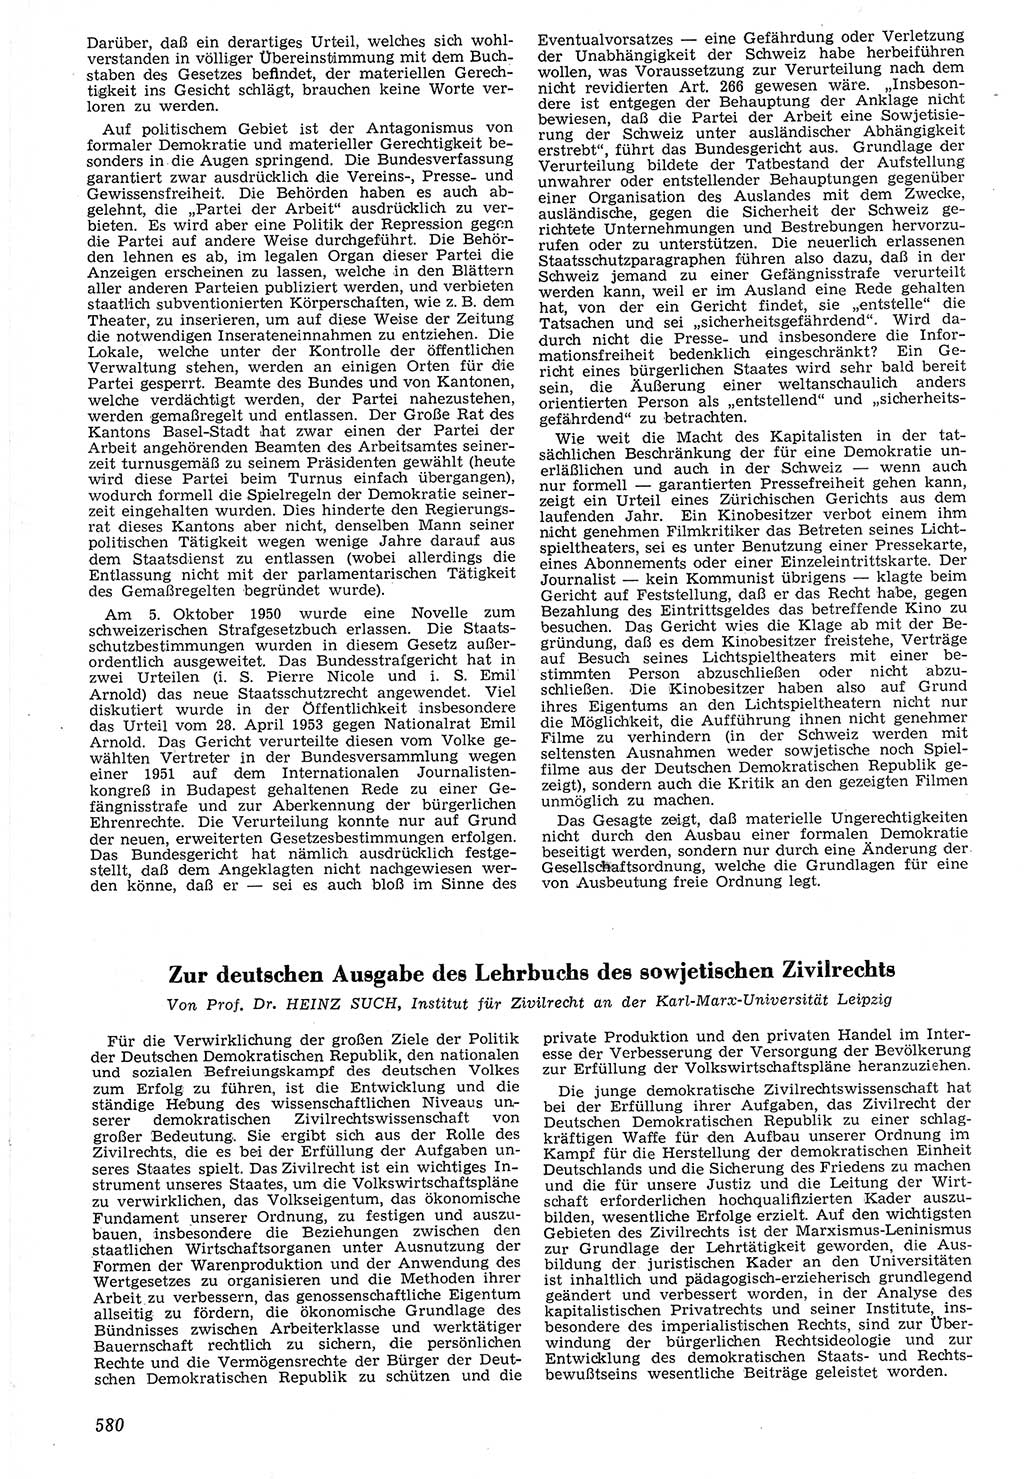 Neue Justiz (NJ), Zeitschrift für Recht und Rechtswissenschaft [Deutsche Demokratische Republik (DDR)], 7. Jahrgang 1953, Seite 580 (NJ DDR 1953, S. 580)